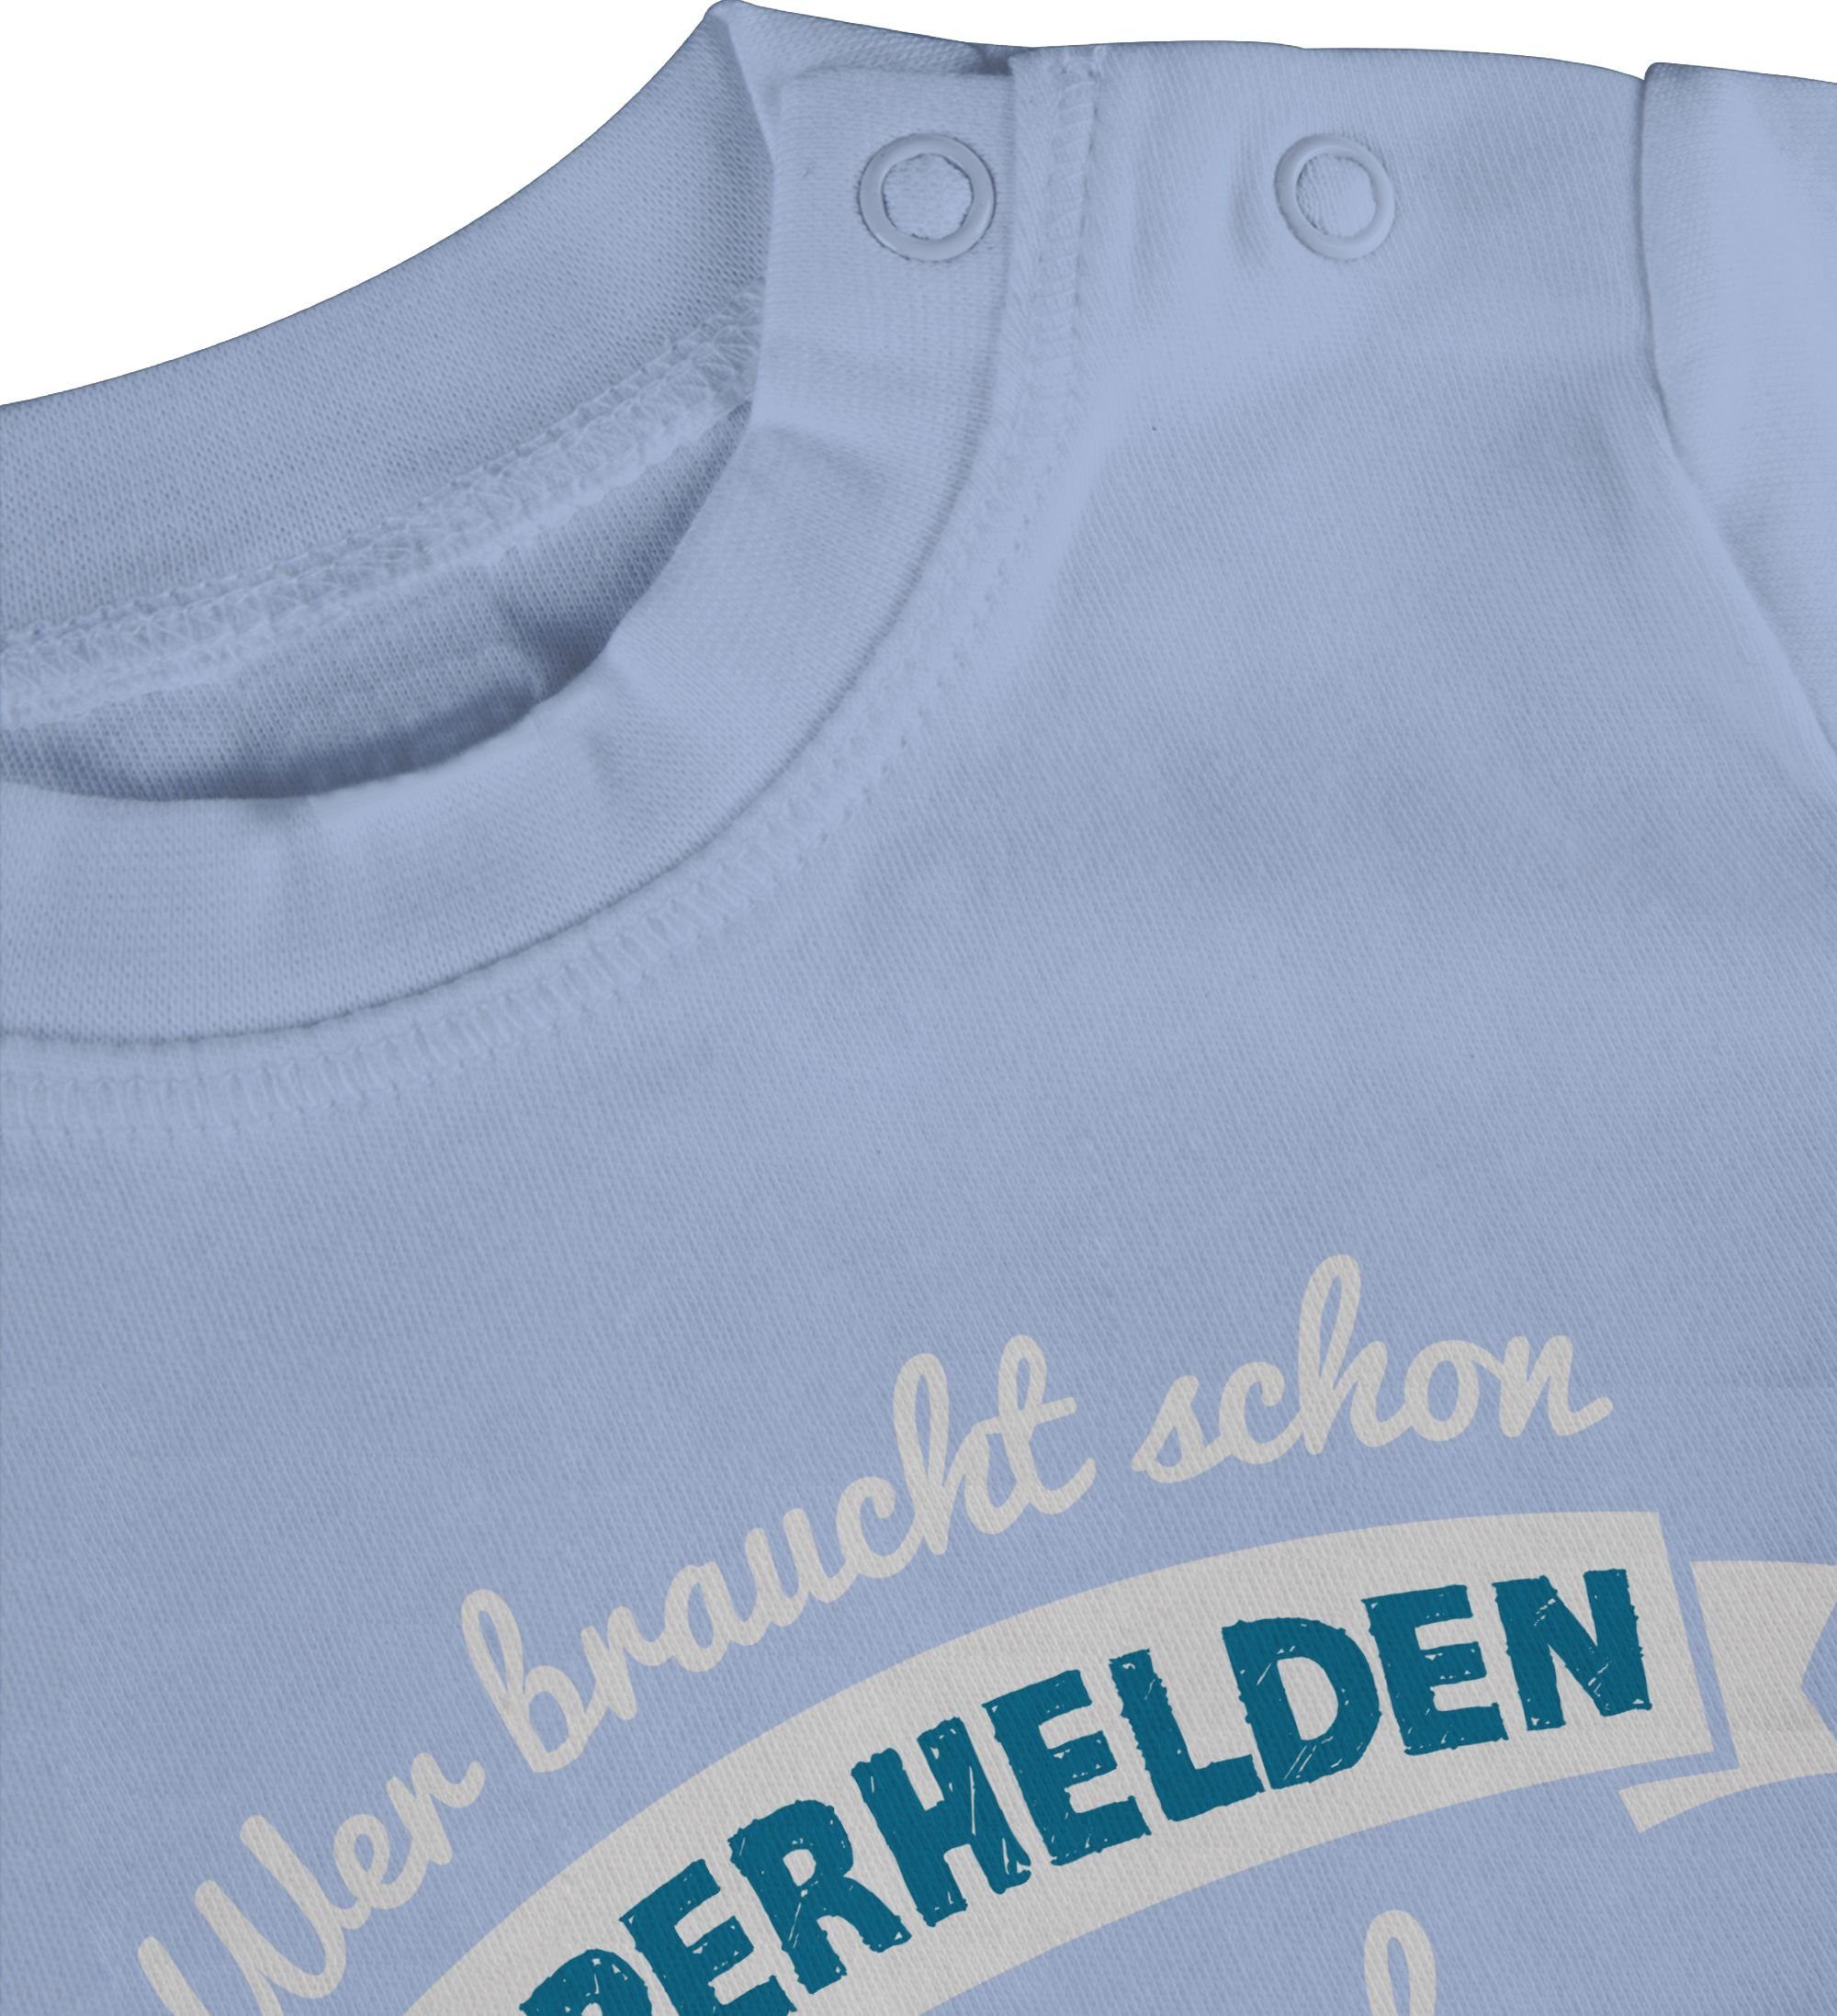 Baby Vatertag T-Shirt Wer blau hab Geschenk schon Superhelden 2 ich Papa braucht Shirtracer Babyblau